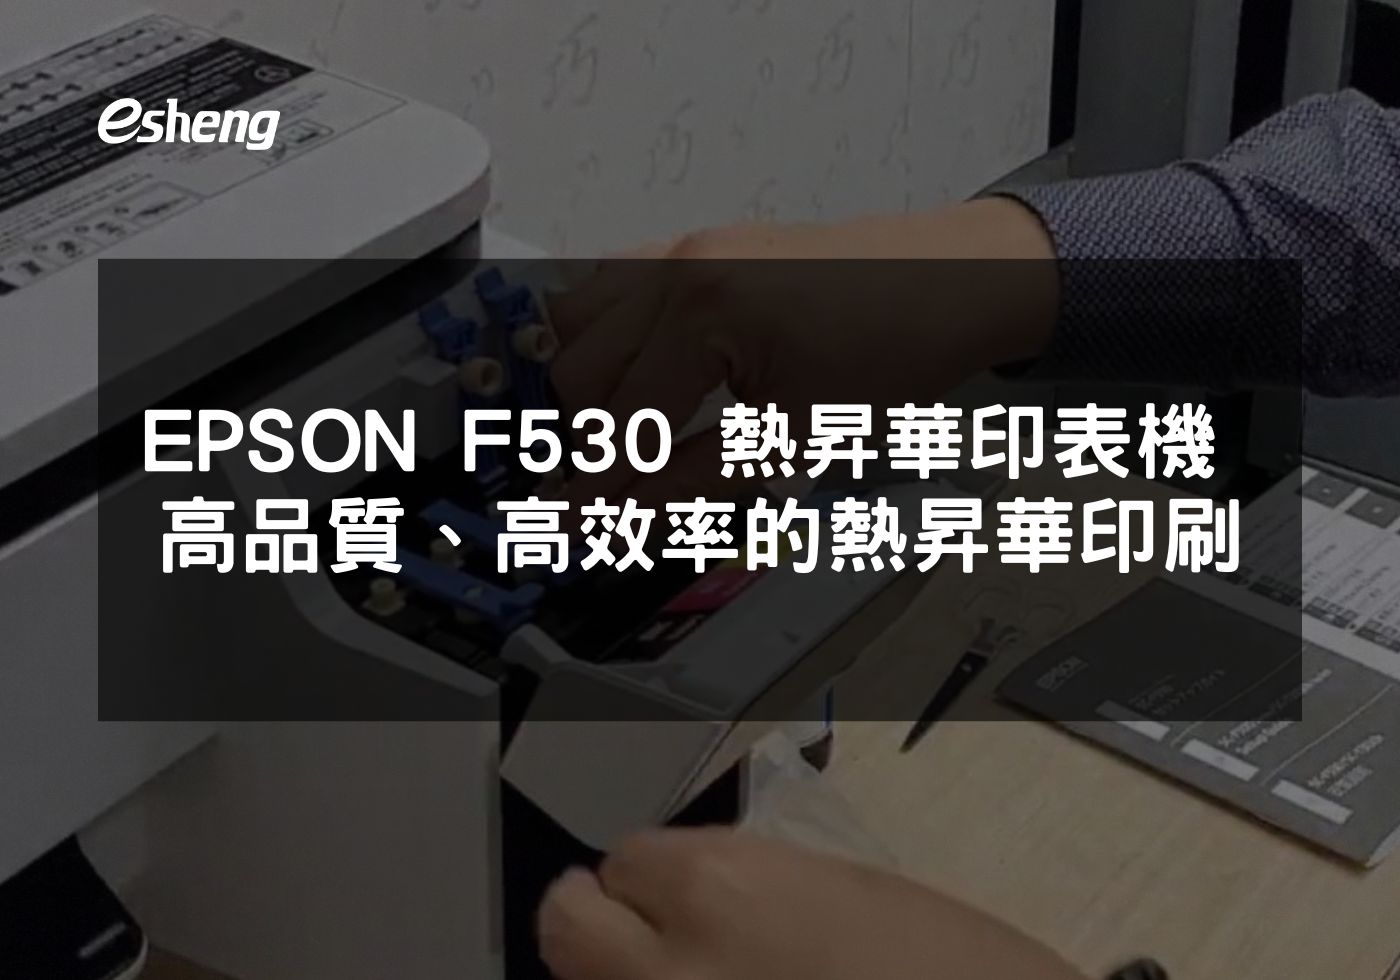 閱讀更多文章 EPSON F530 熱昇華印表機 高品質、高效率的熱昇華印刷